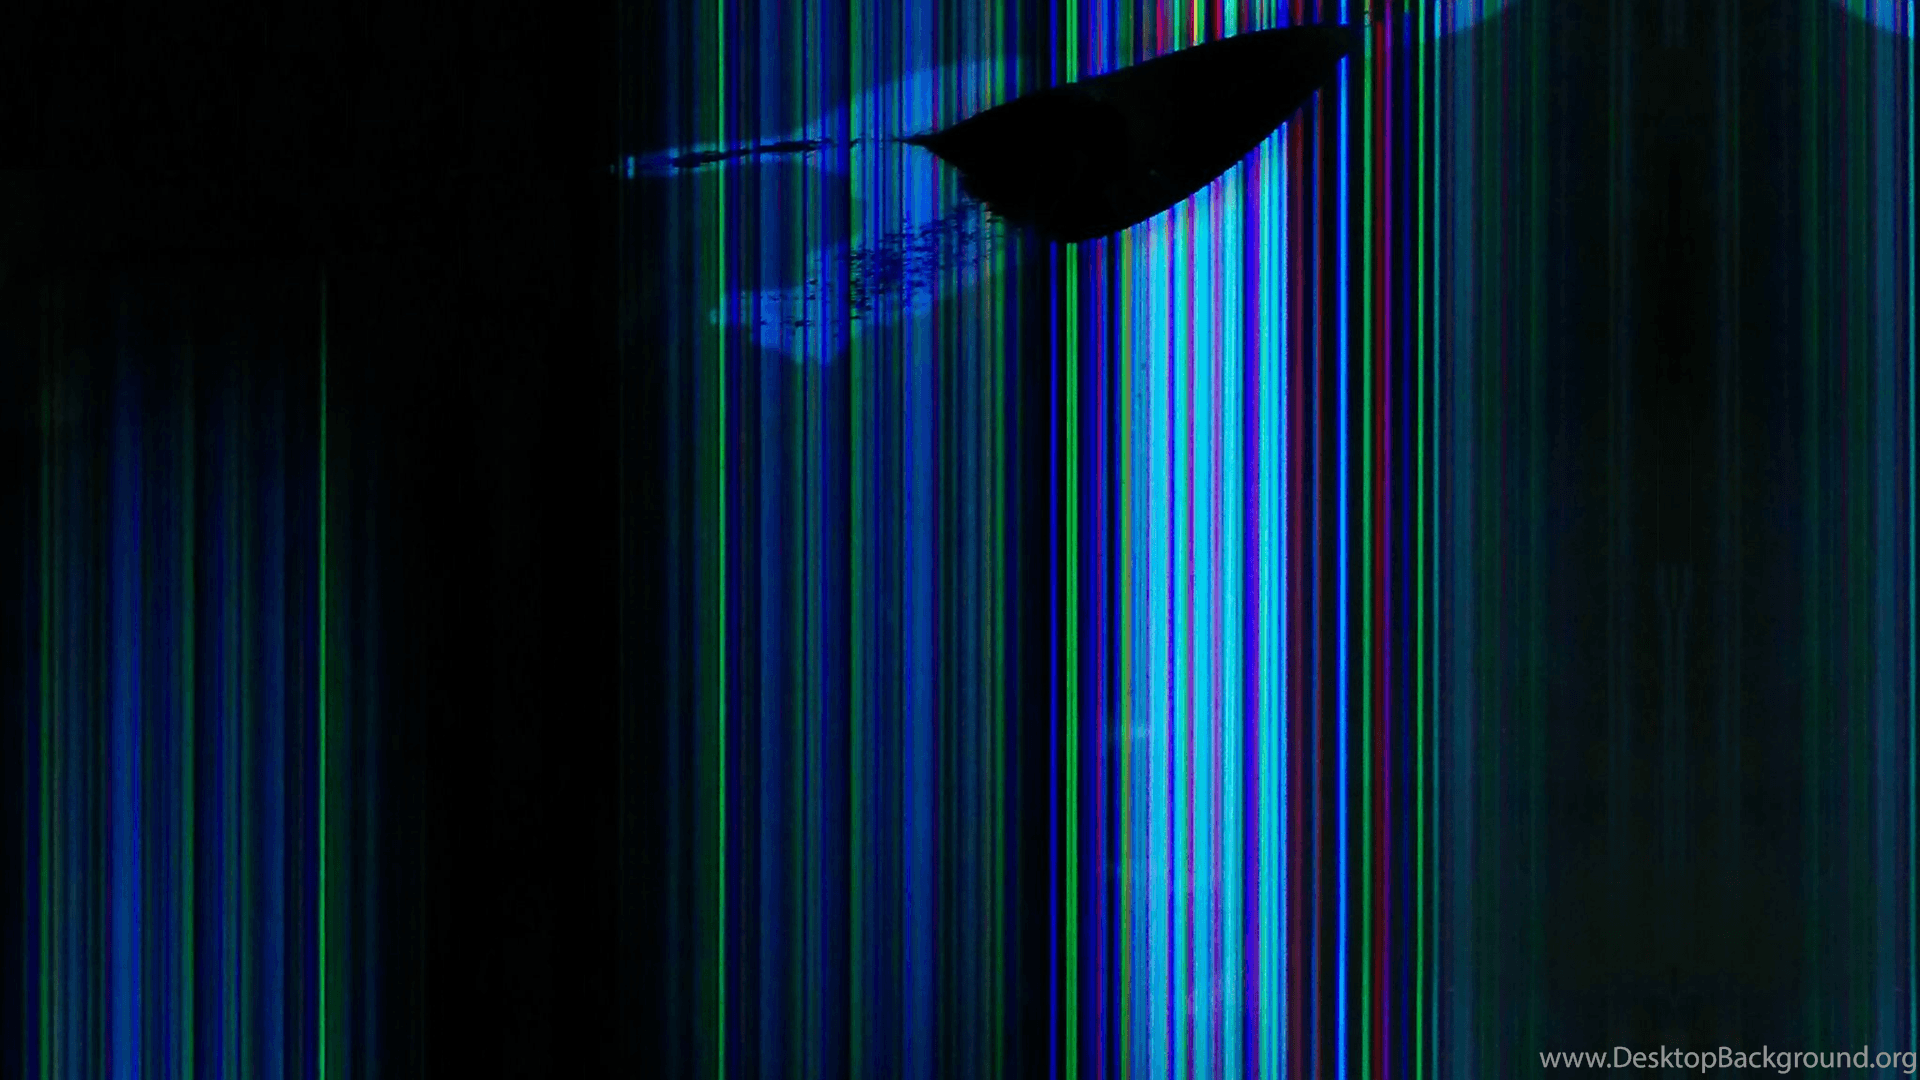 48+] Broken TV Screen Wallpaper - WallpaperSafari